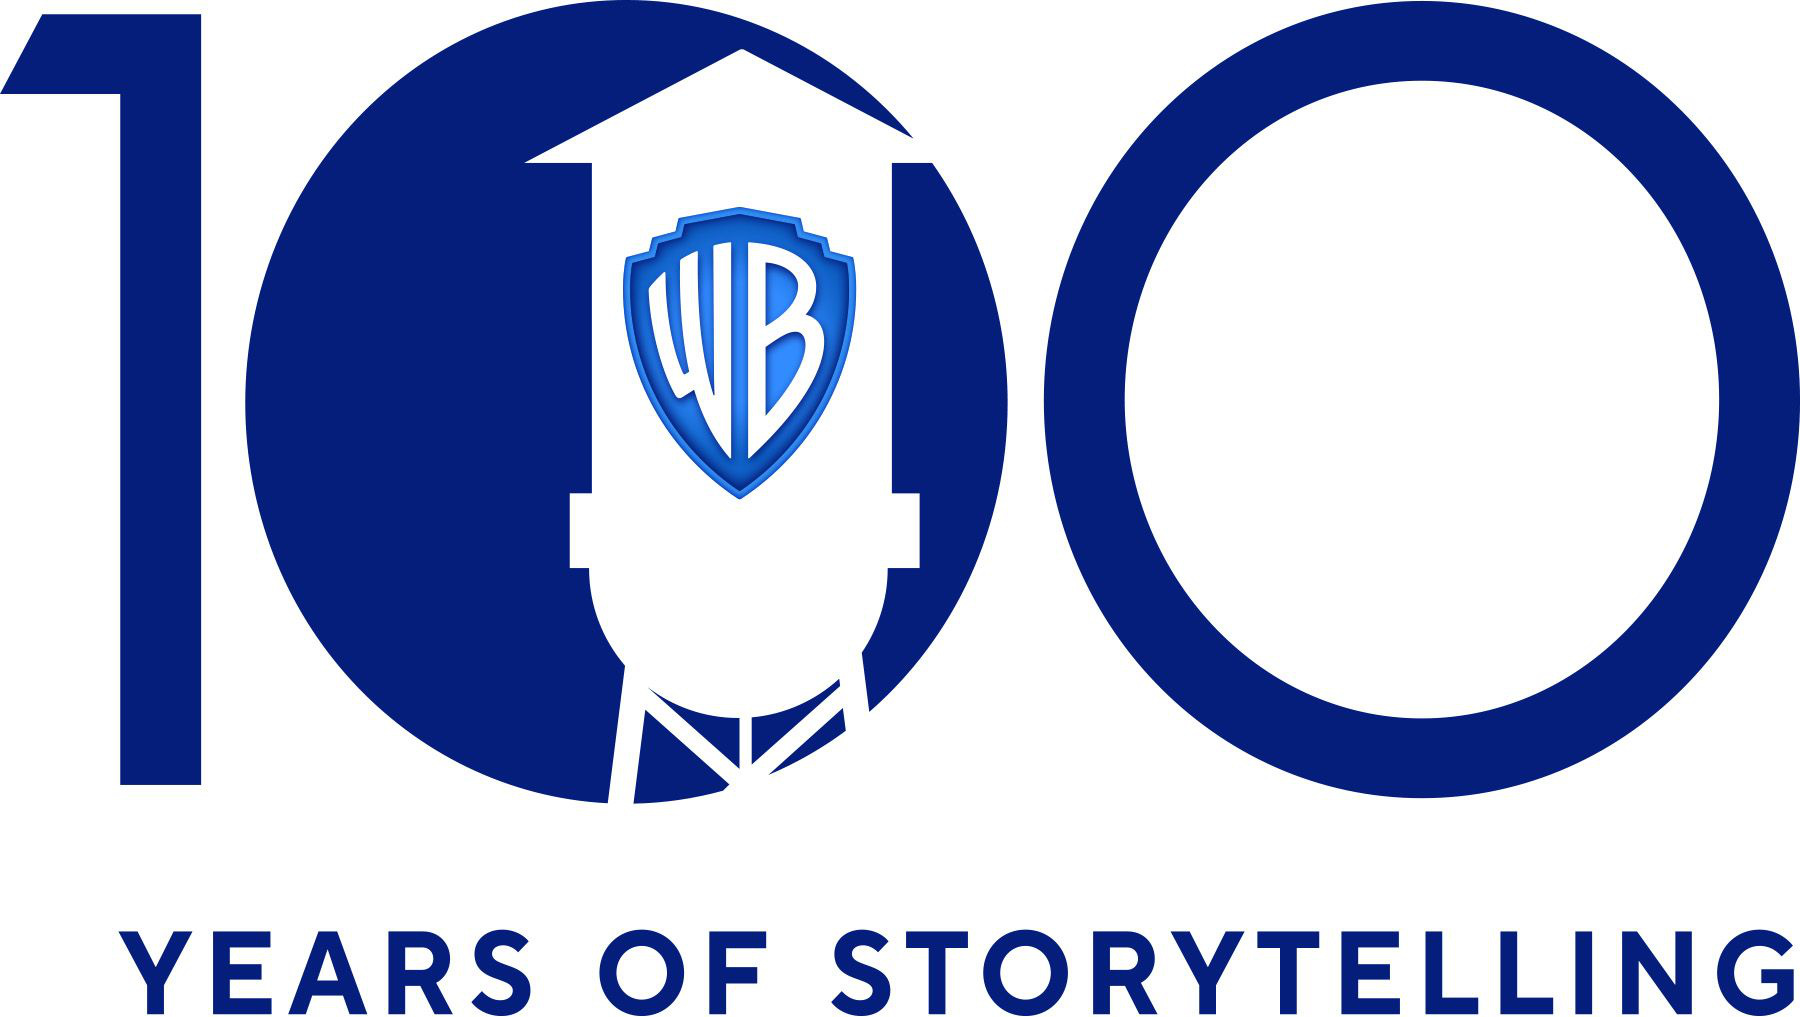 华纳影业公布创立100周年标志 经典元素扁平设计